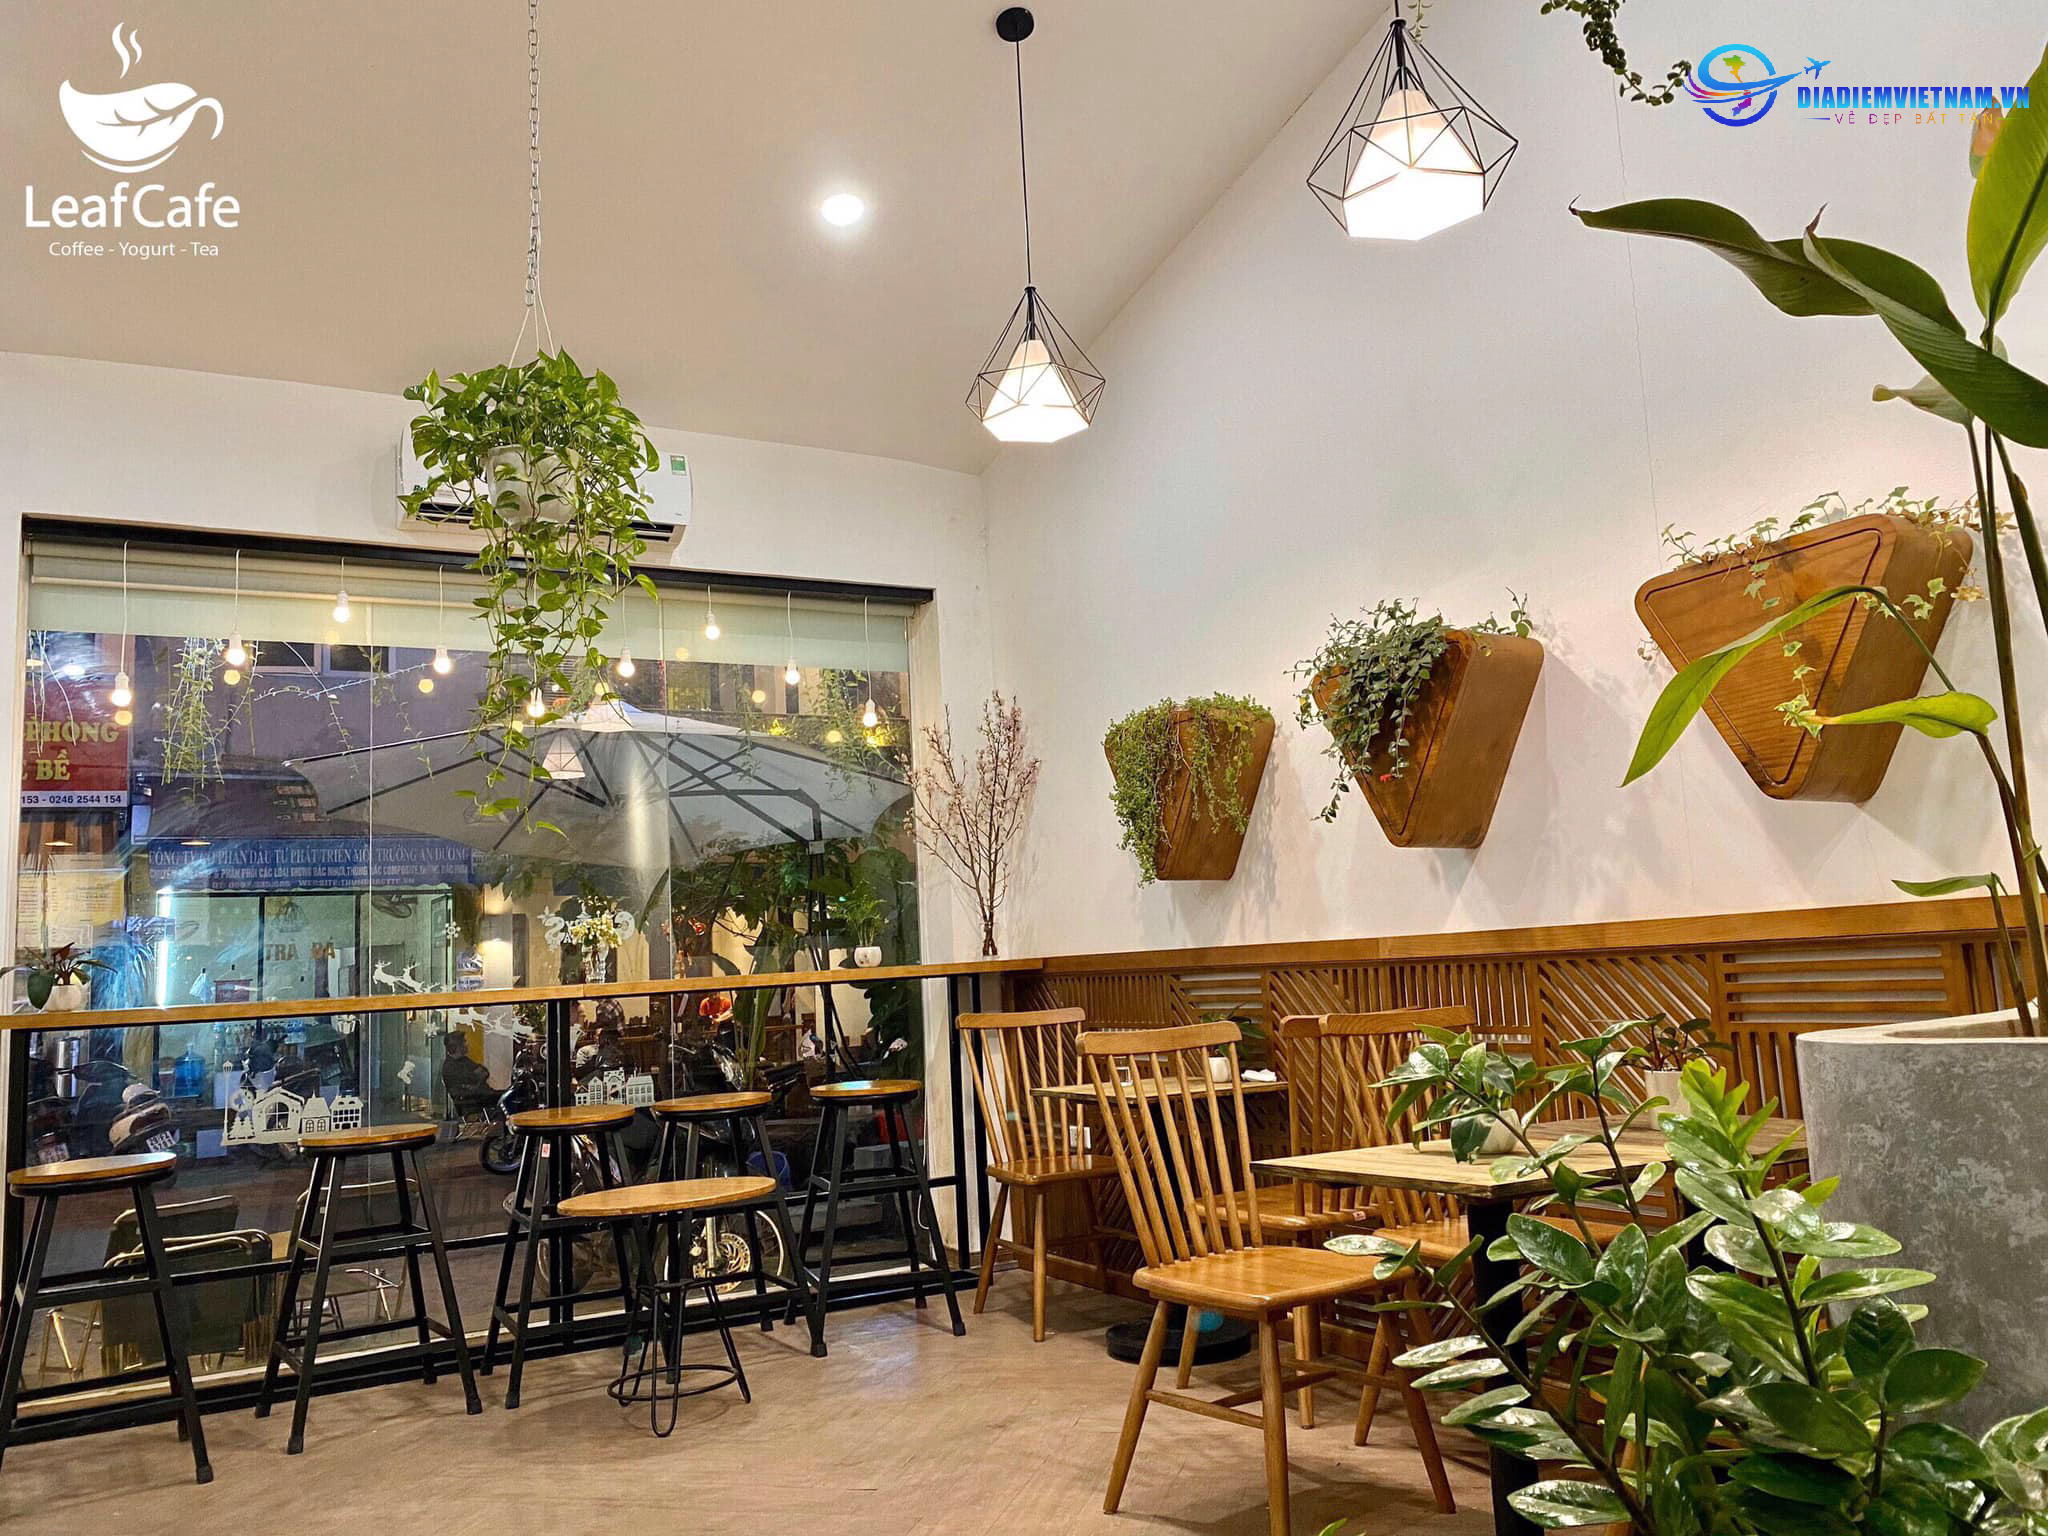 Phong cách thiết kế quán của Leaf Cafe